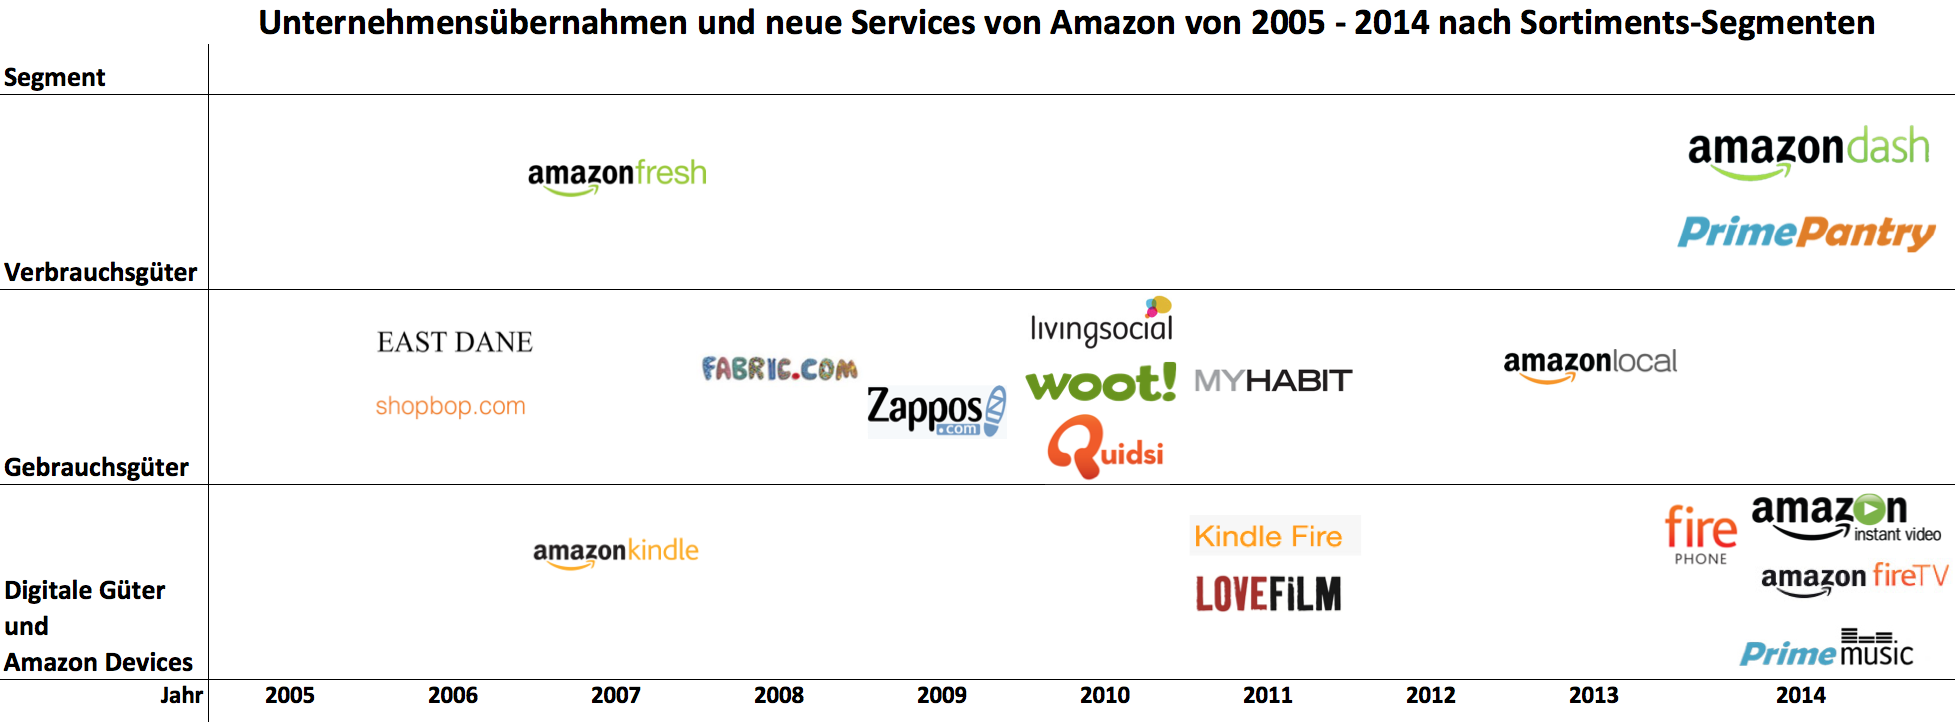 Übernahmen und neue Services von Amazon 2005 bis 2014